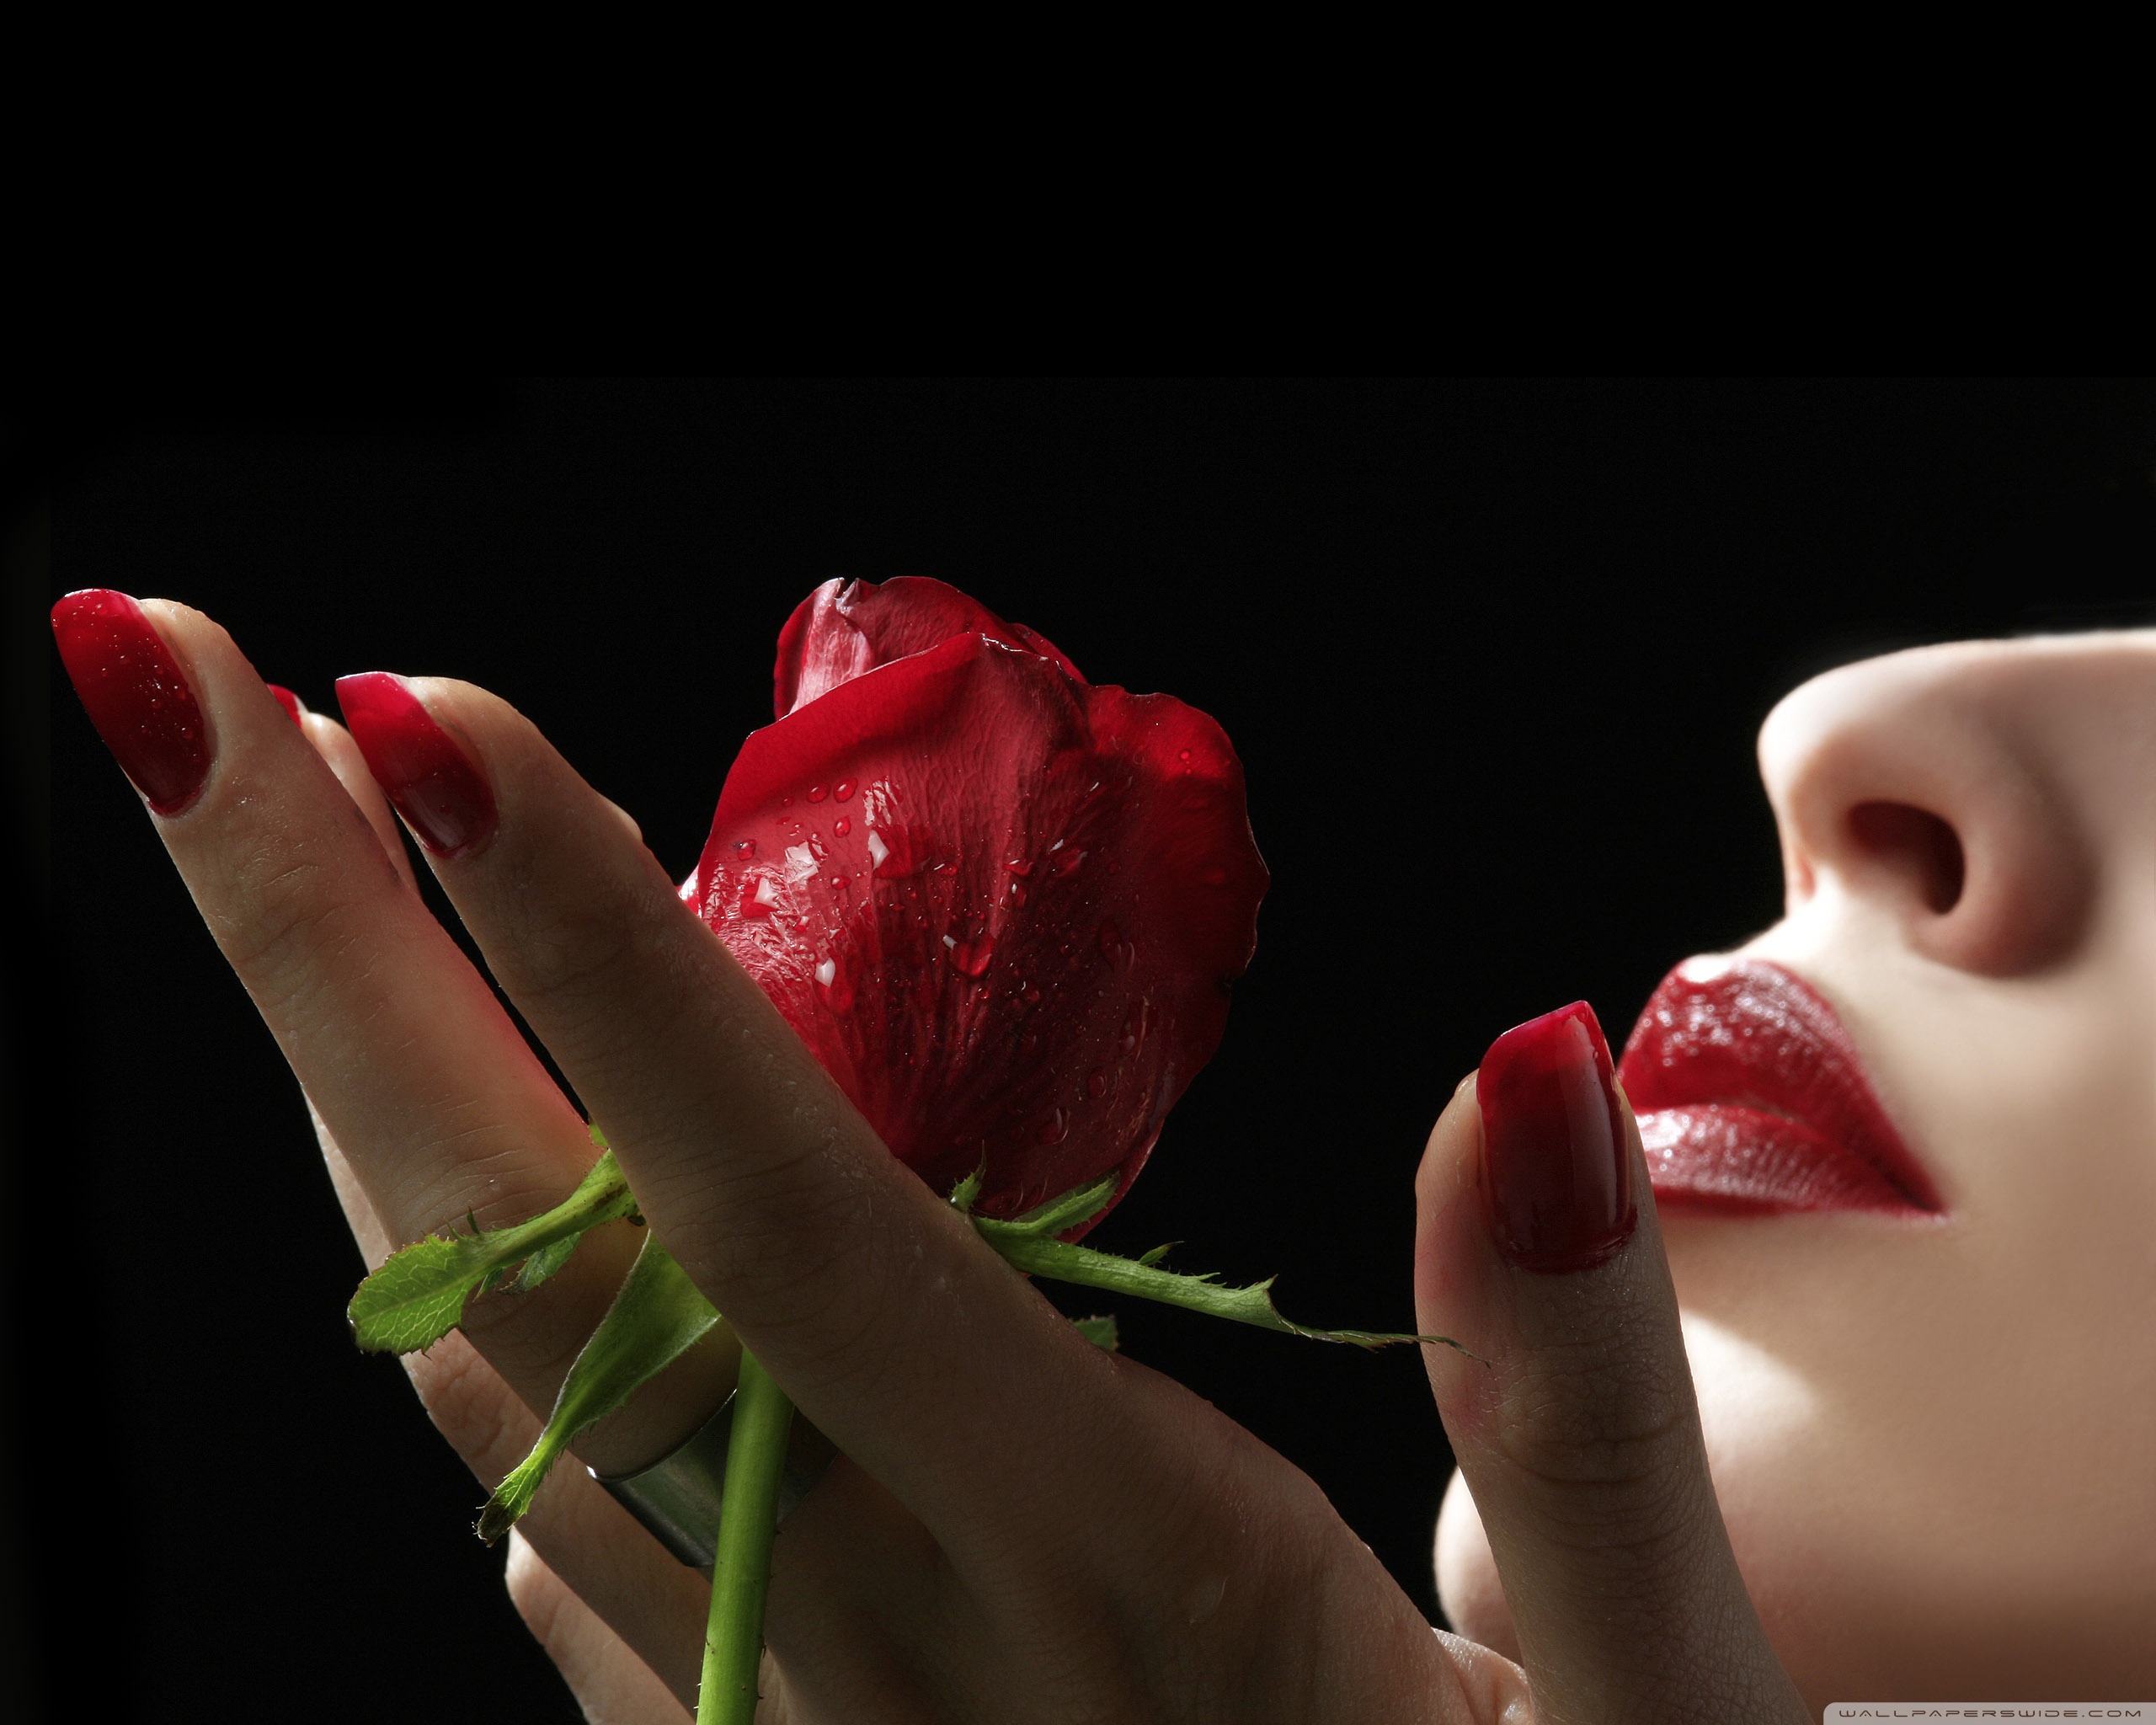 Поцелуй эти лепестки моей любимой. Красивые цветы в руках. Девушка с розой в руках. Женская рука с цветком.